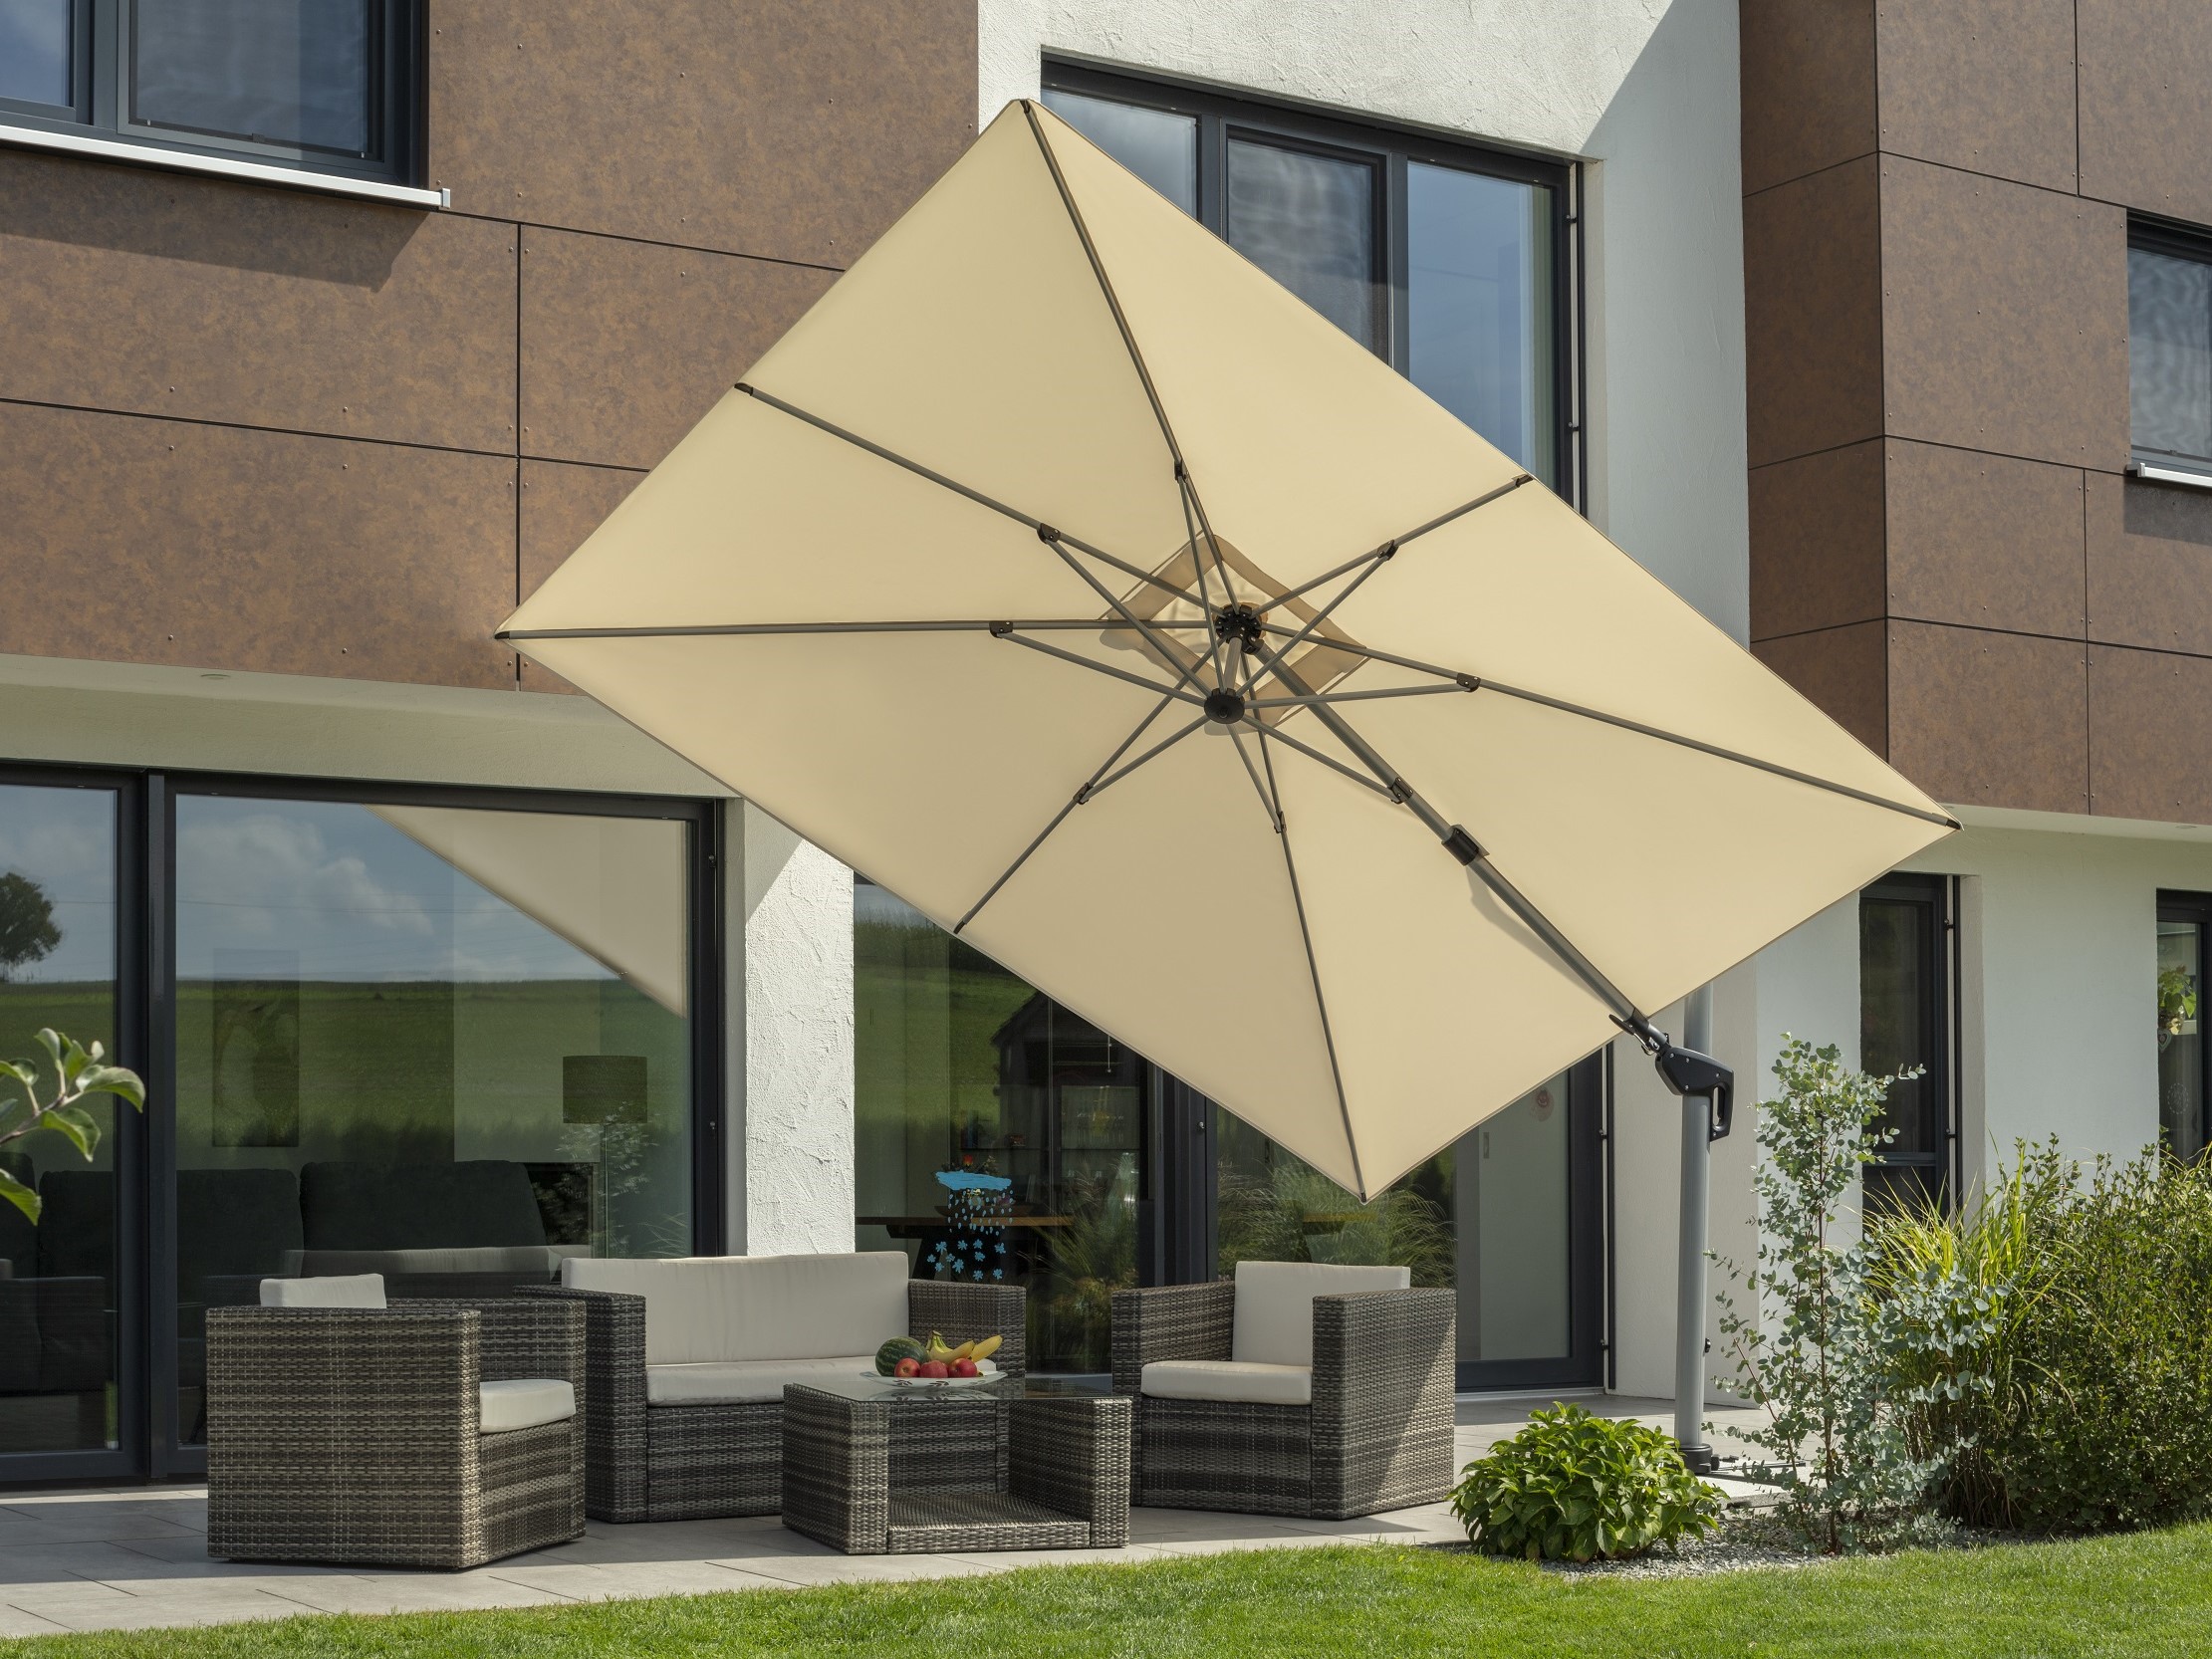 2023 Universal Bodenplatte für Sonnenschirme zum einbetonieren Schneider  Schirme 